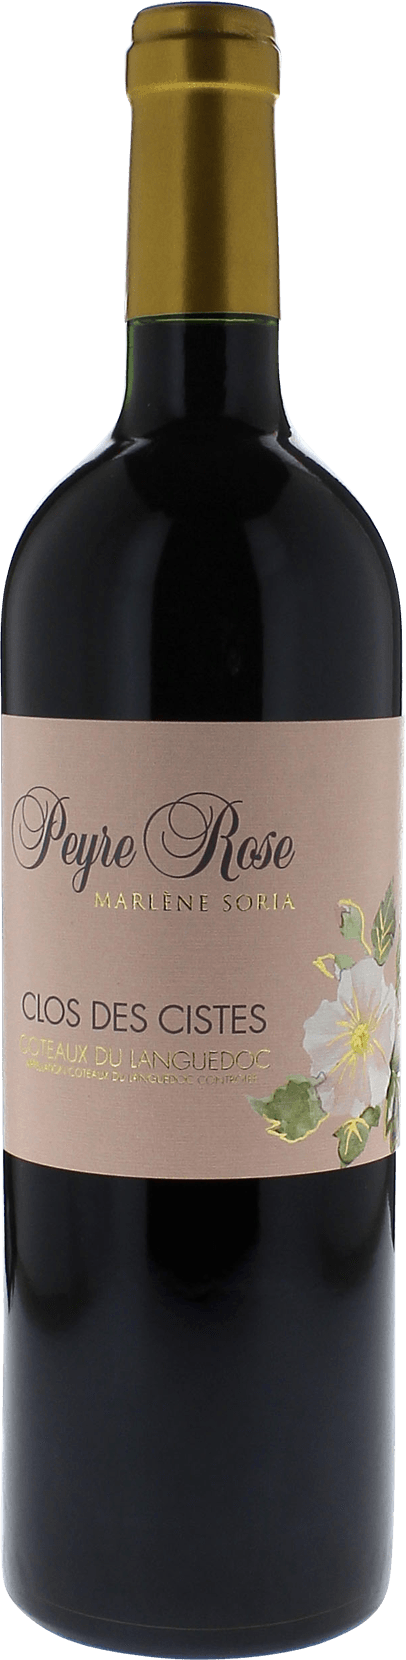 Peyre rose clos des cistes 1998  Coteaux du languedoc AOC, Languedoc rouge